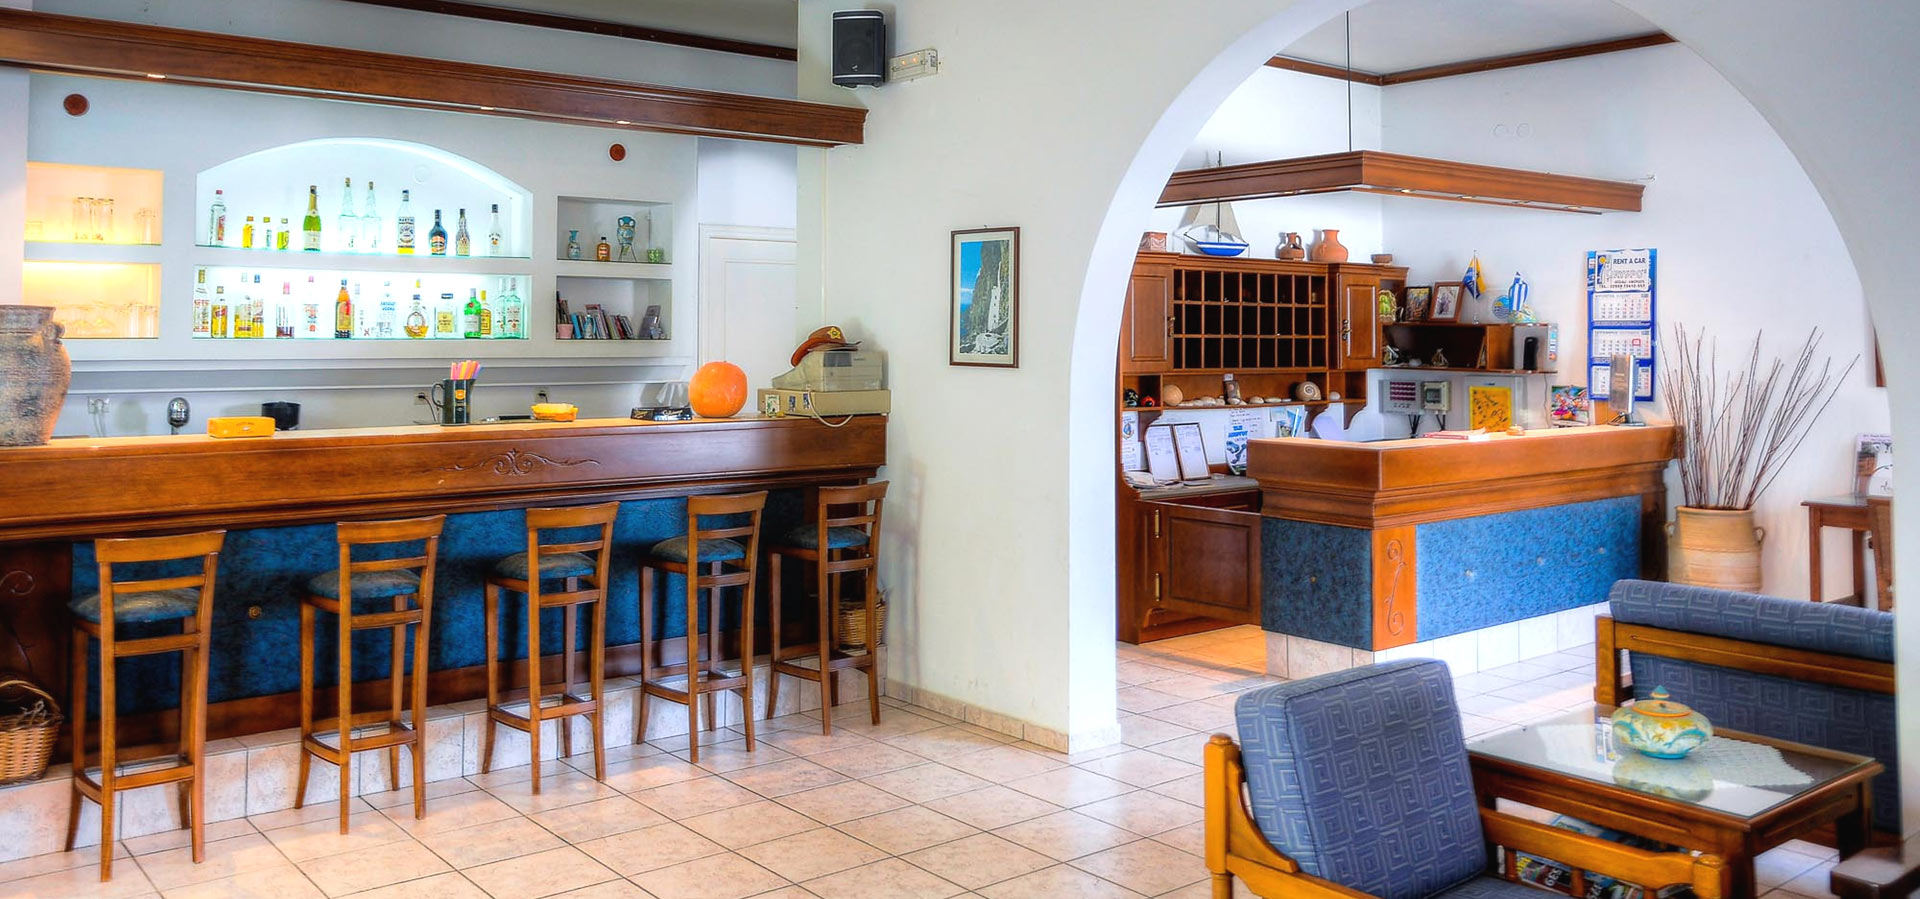 Gryspos Hotel Amorgos – The Reception Bar